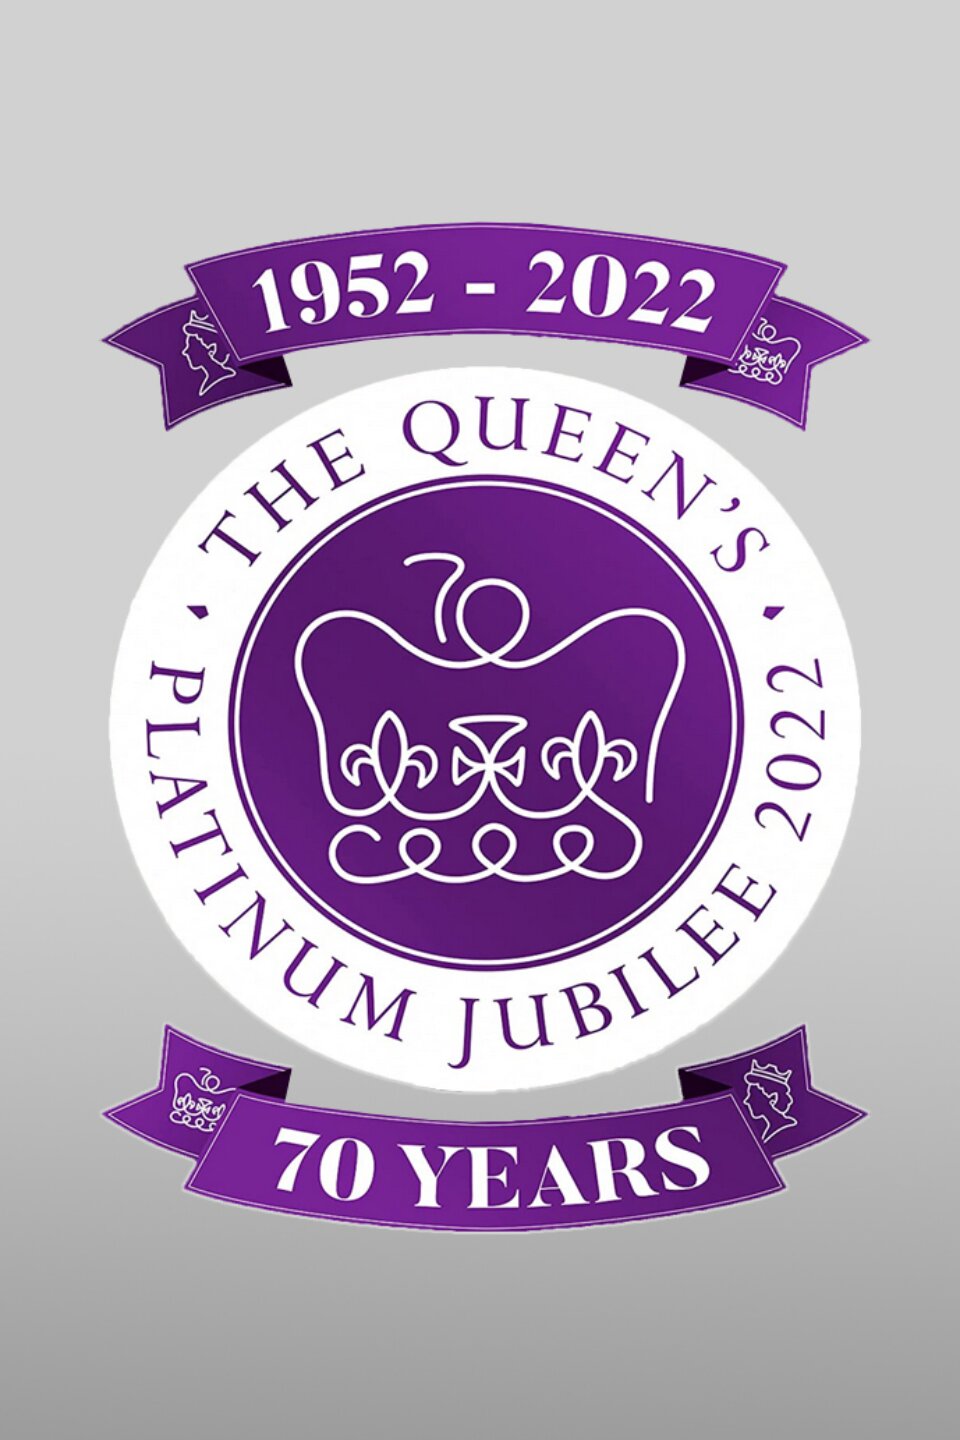 The Queen's Platinum Jubilee ne zaman